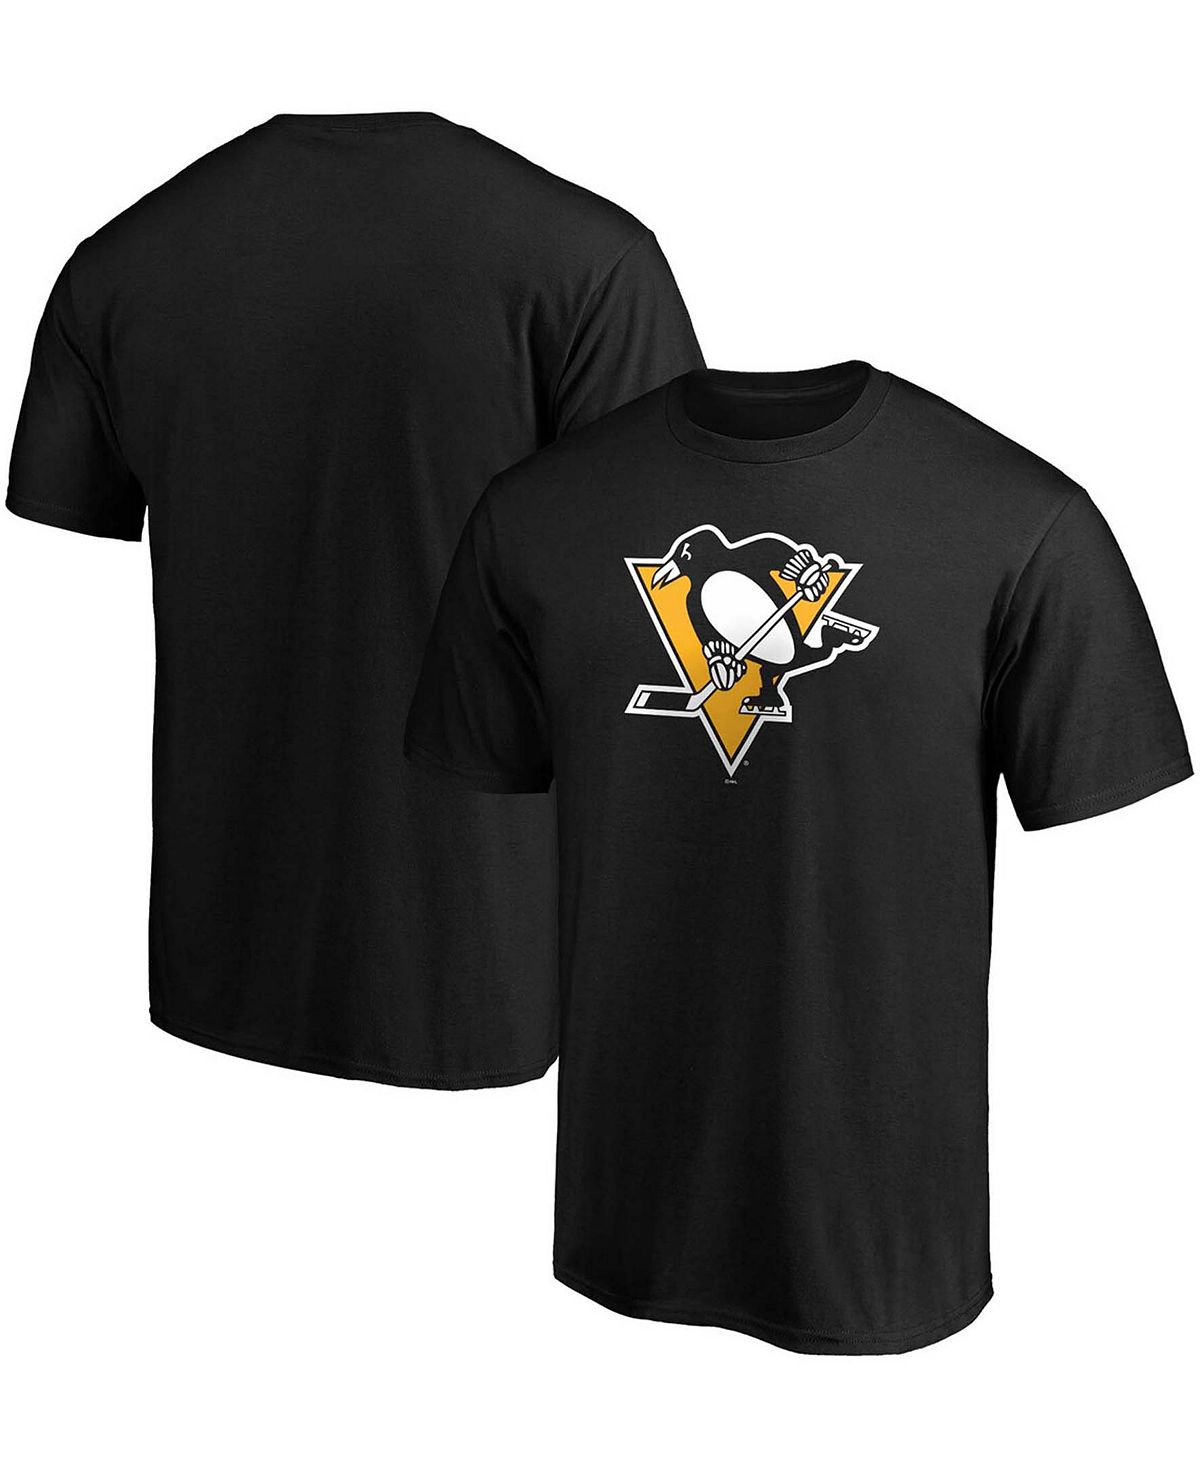 Мужская черная футболка с логотипом pittsburgh penguins team primary Fanatics, черный